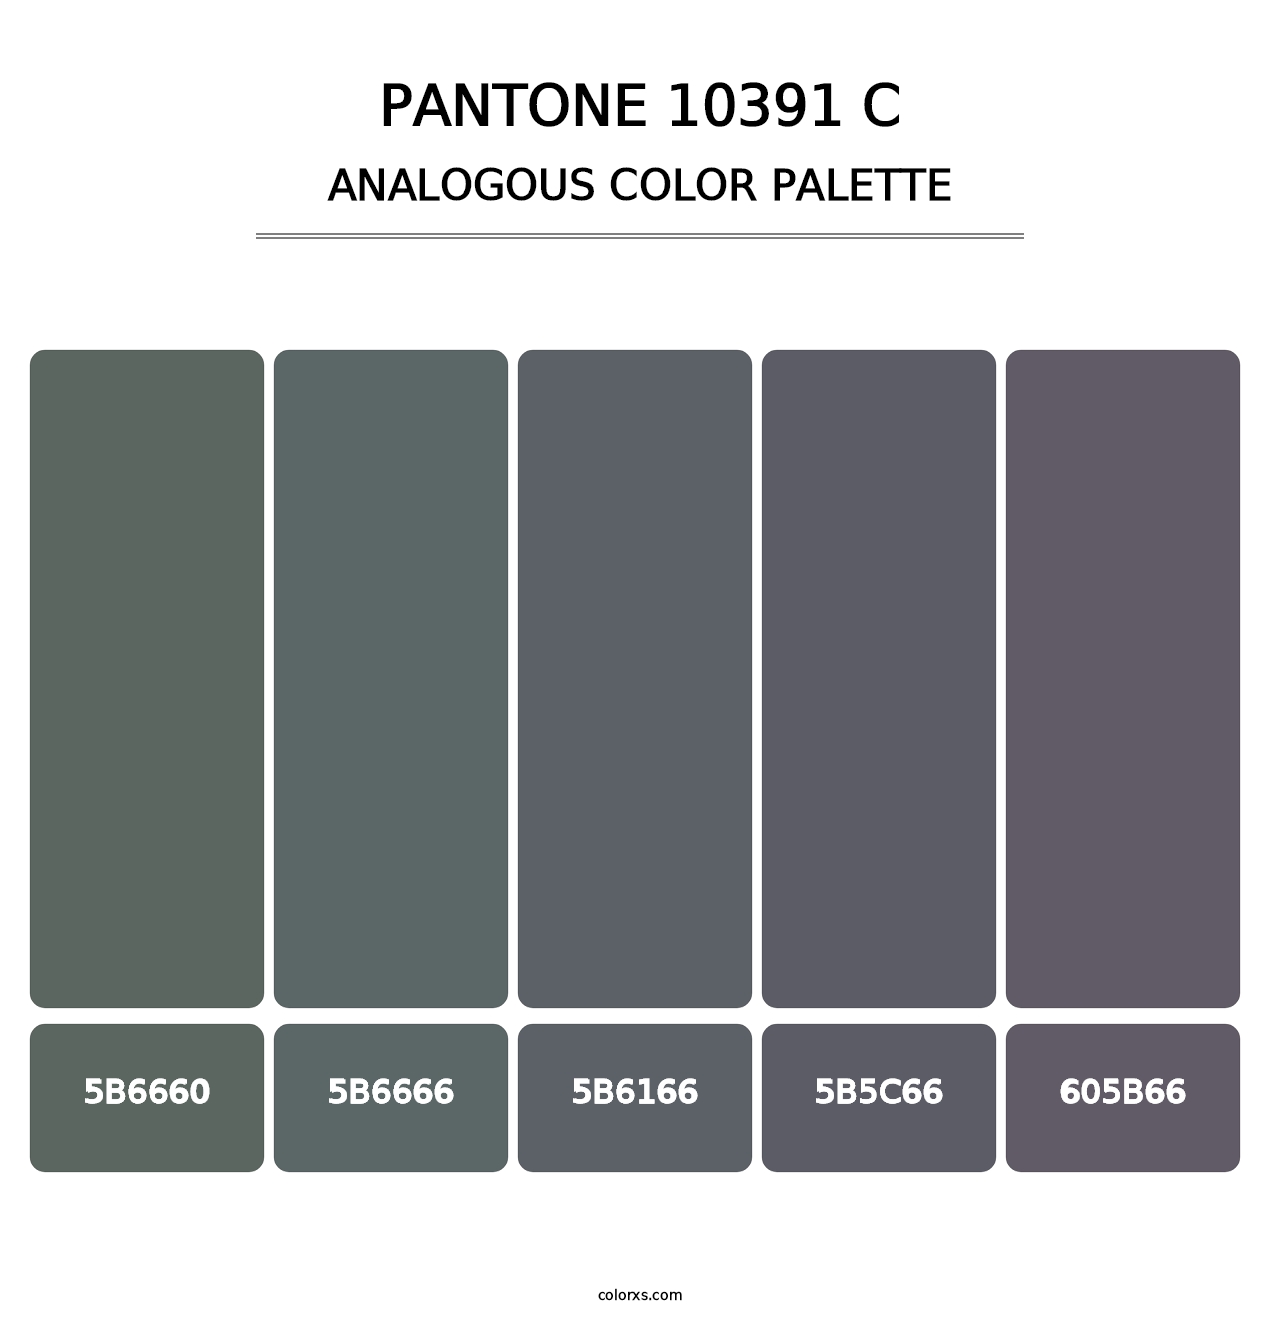 PANTONE 10391 C - Analogous Color Palette